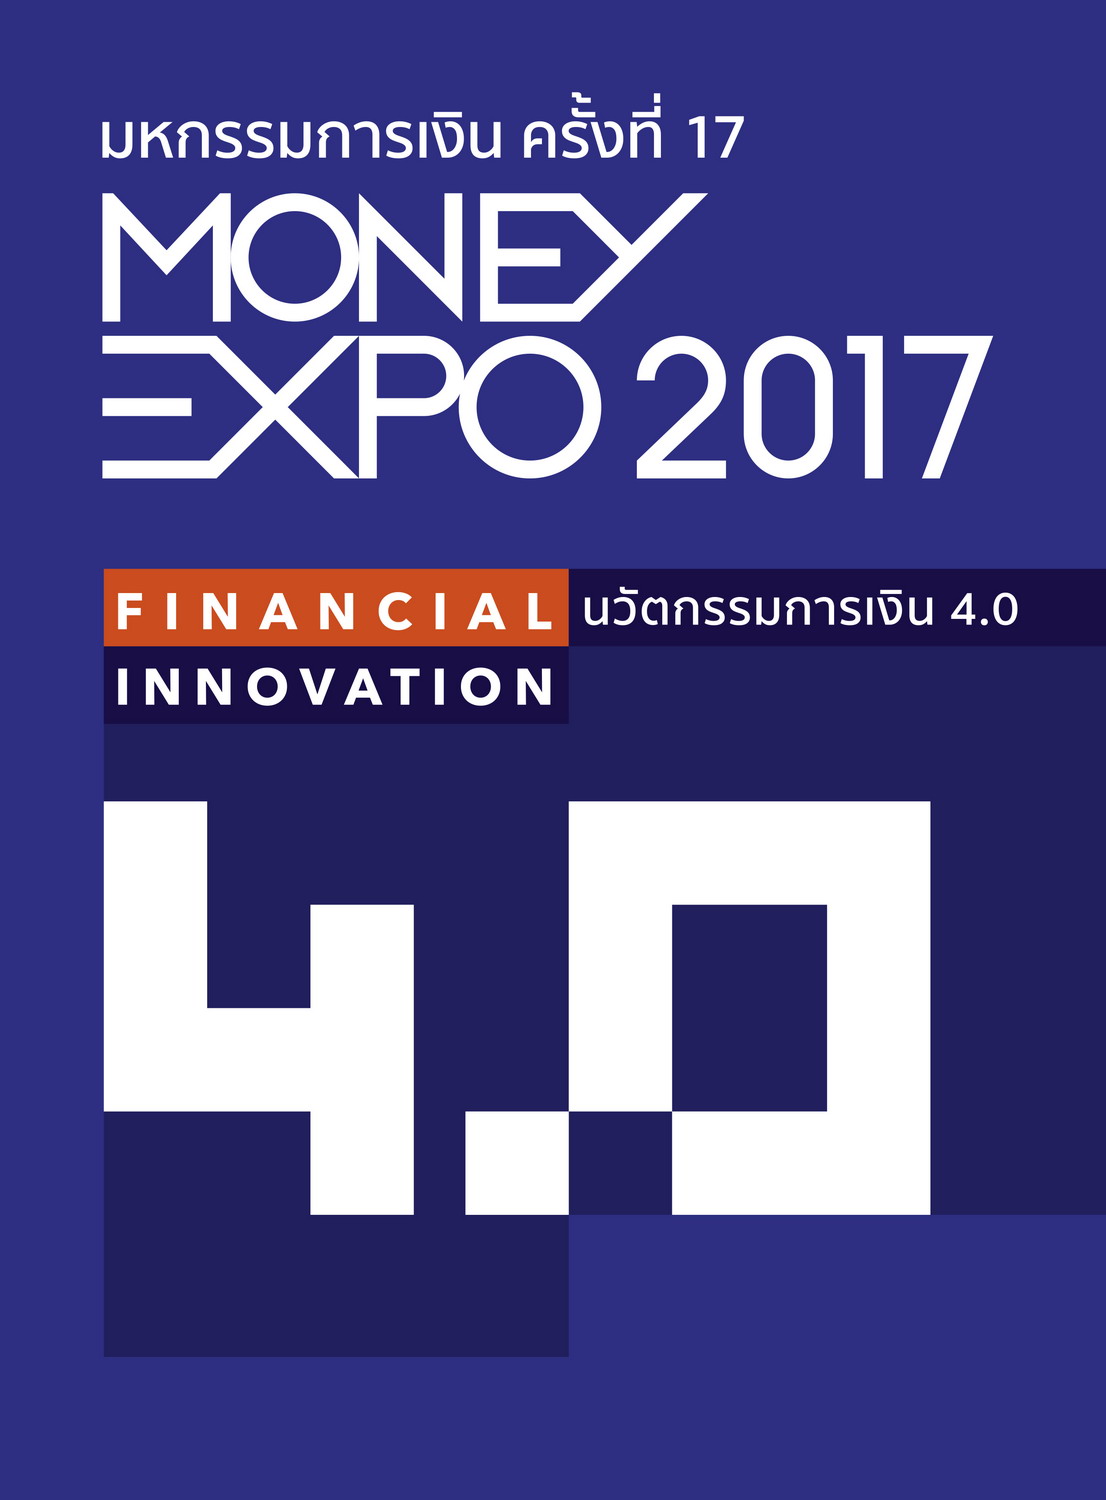 งานมหกรรมการเงิน Money Expo เชียงใหม่ ครั้งที่ 12 จังหวัดเชียงใหม่